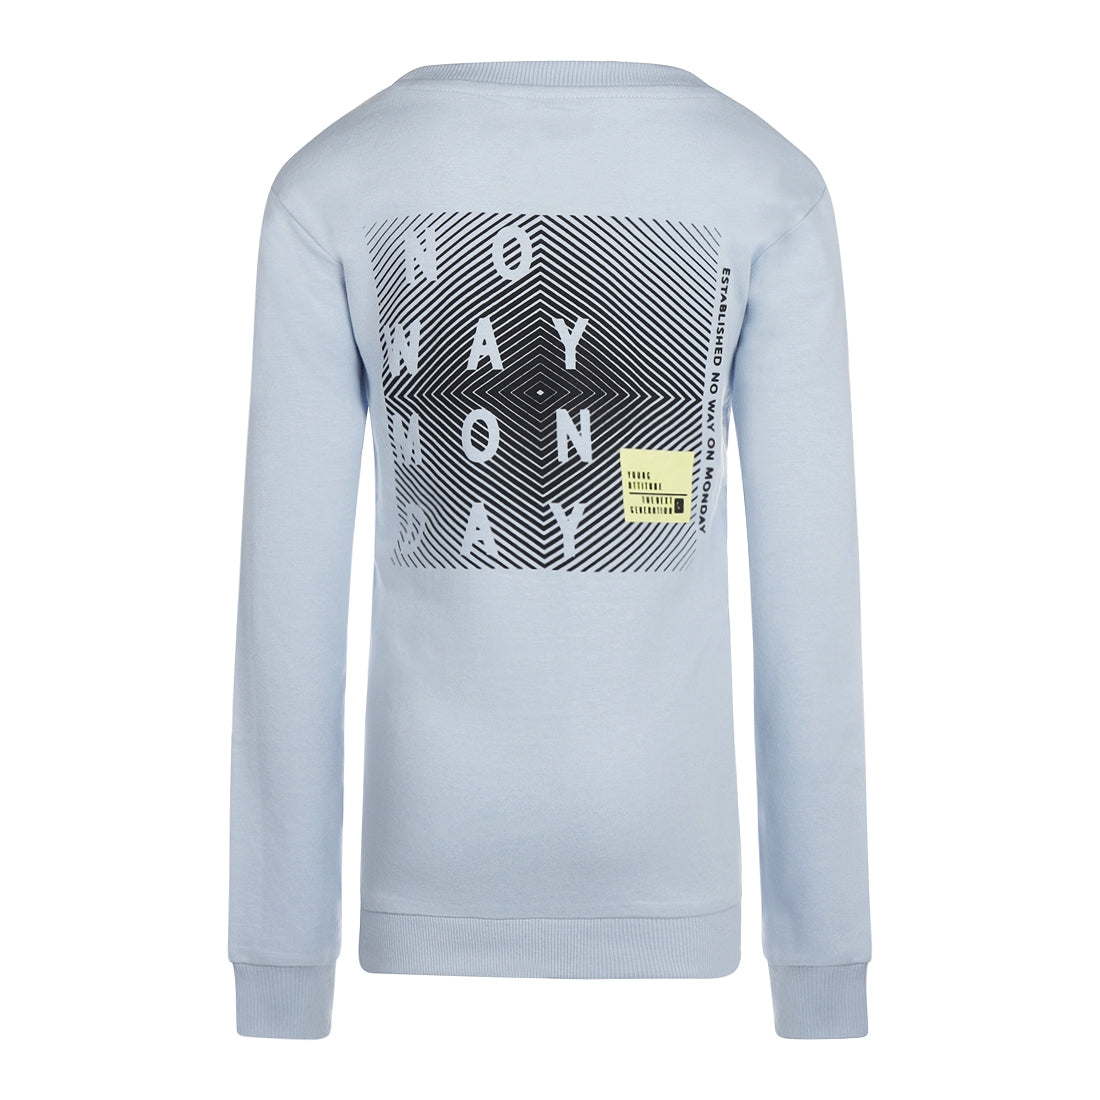 Jongens Sweater with crewneck ls van No Way Monday in de kleur Light blue in maat 164.